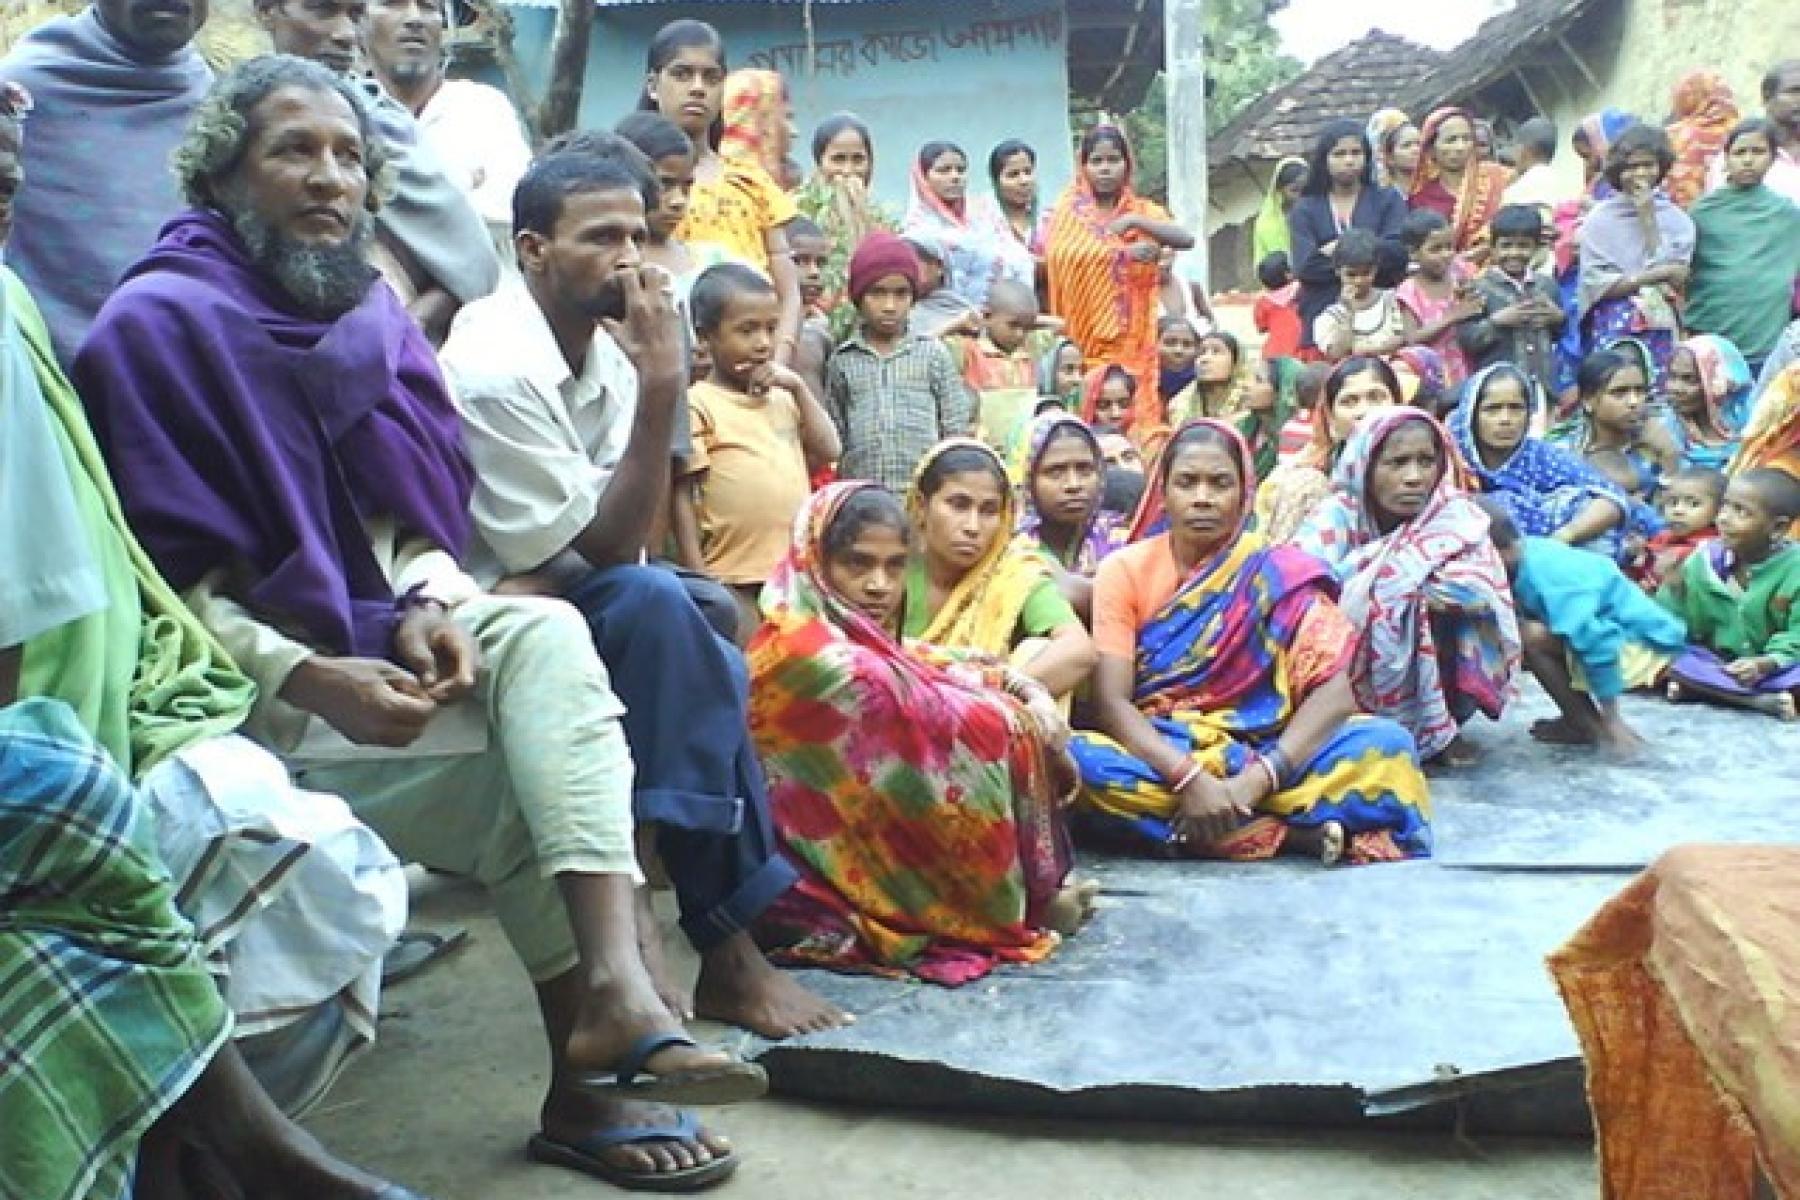 Nepal - Dalit lives matter